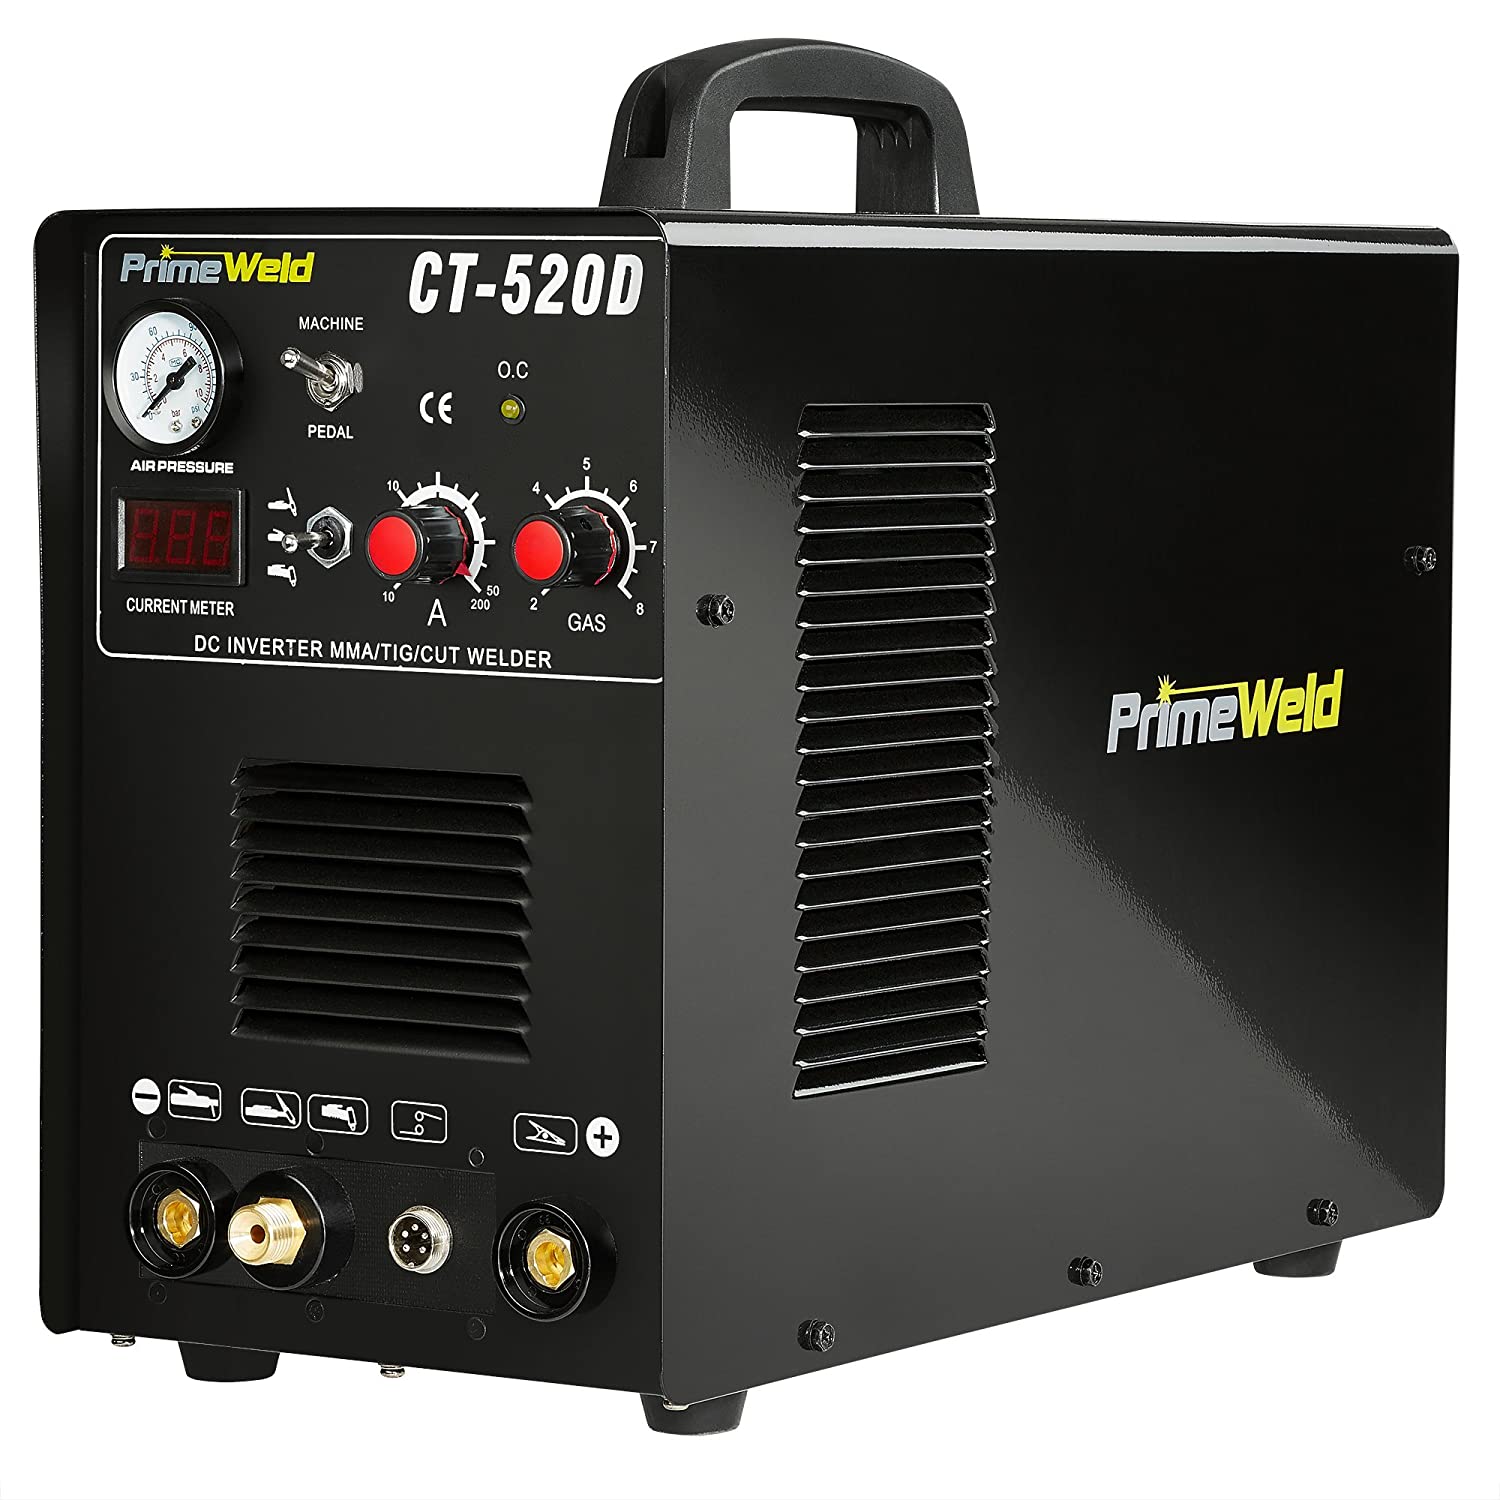 PrimeWeld 3-in-1 50 Amp Plasma Cutter